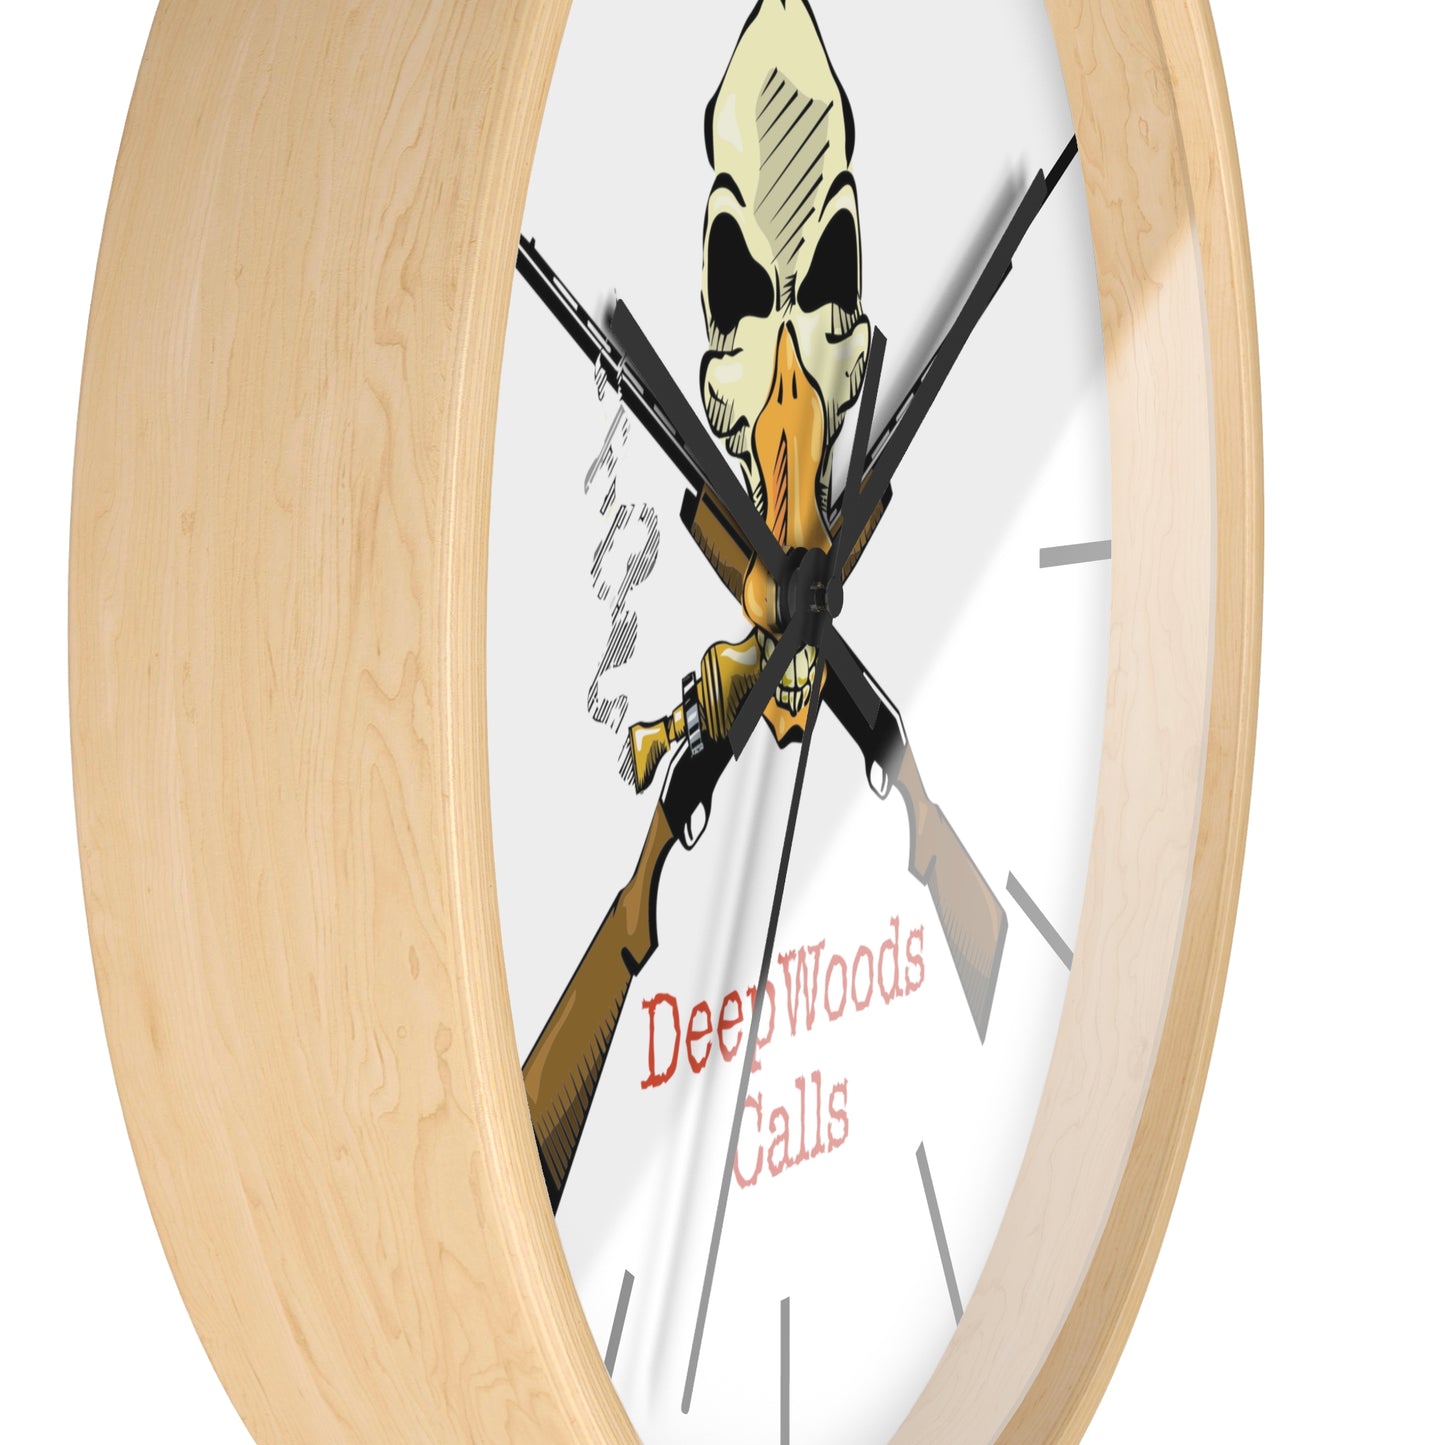 Deepwoods Calls Wall Clock